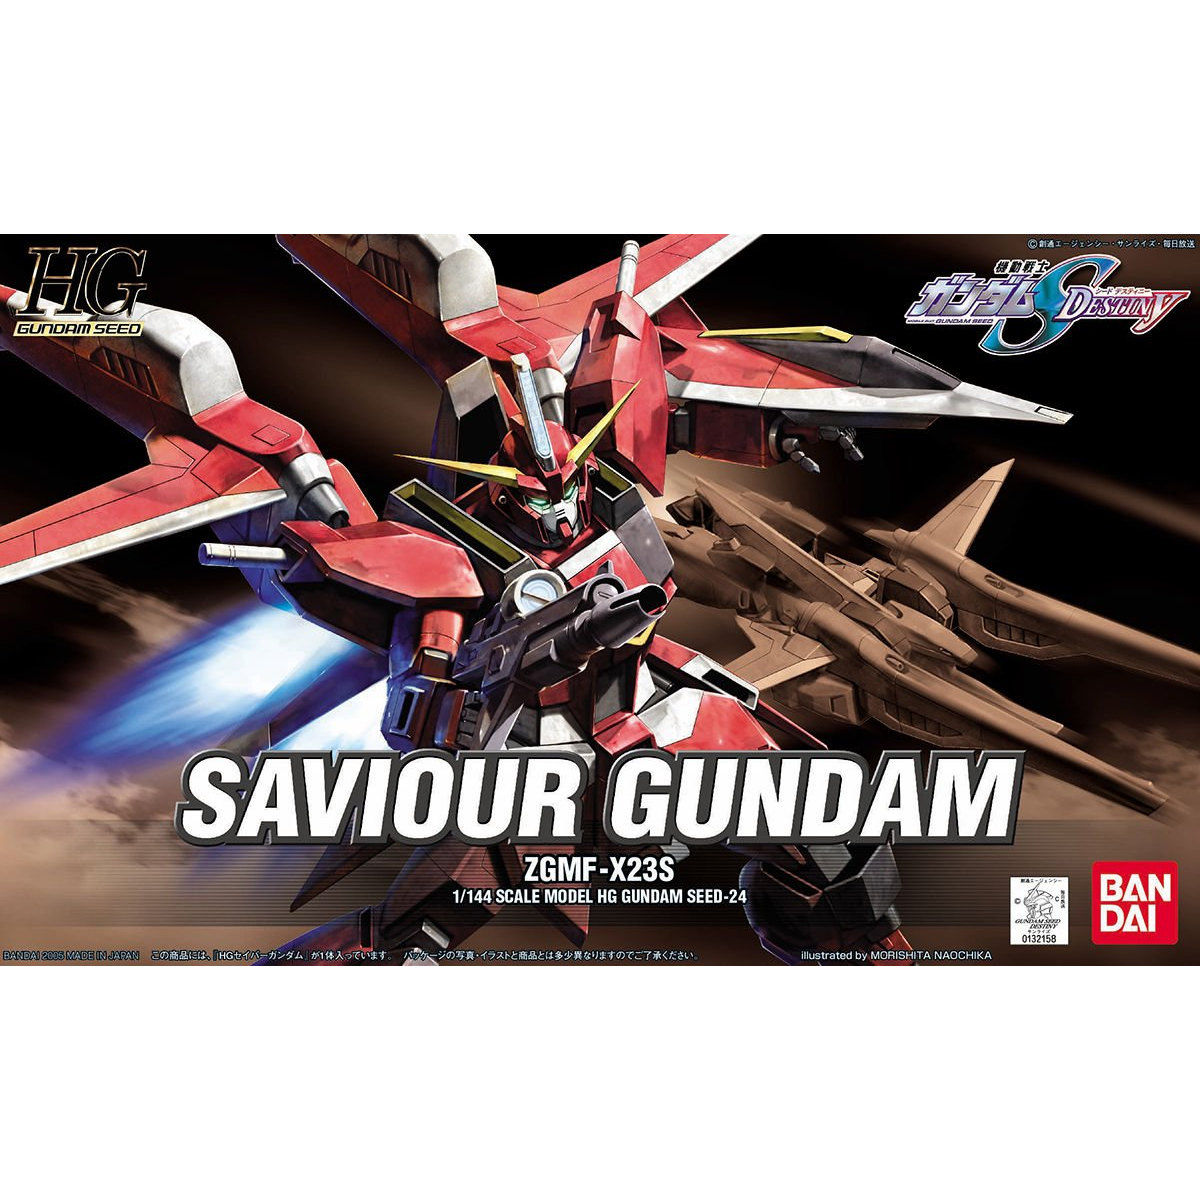 HGGS 1/144 No.24 ZGMF-X23S Saviour Gundam